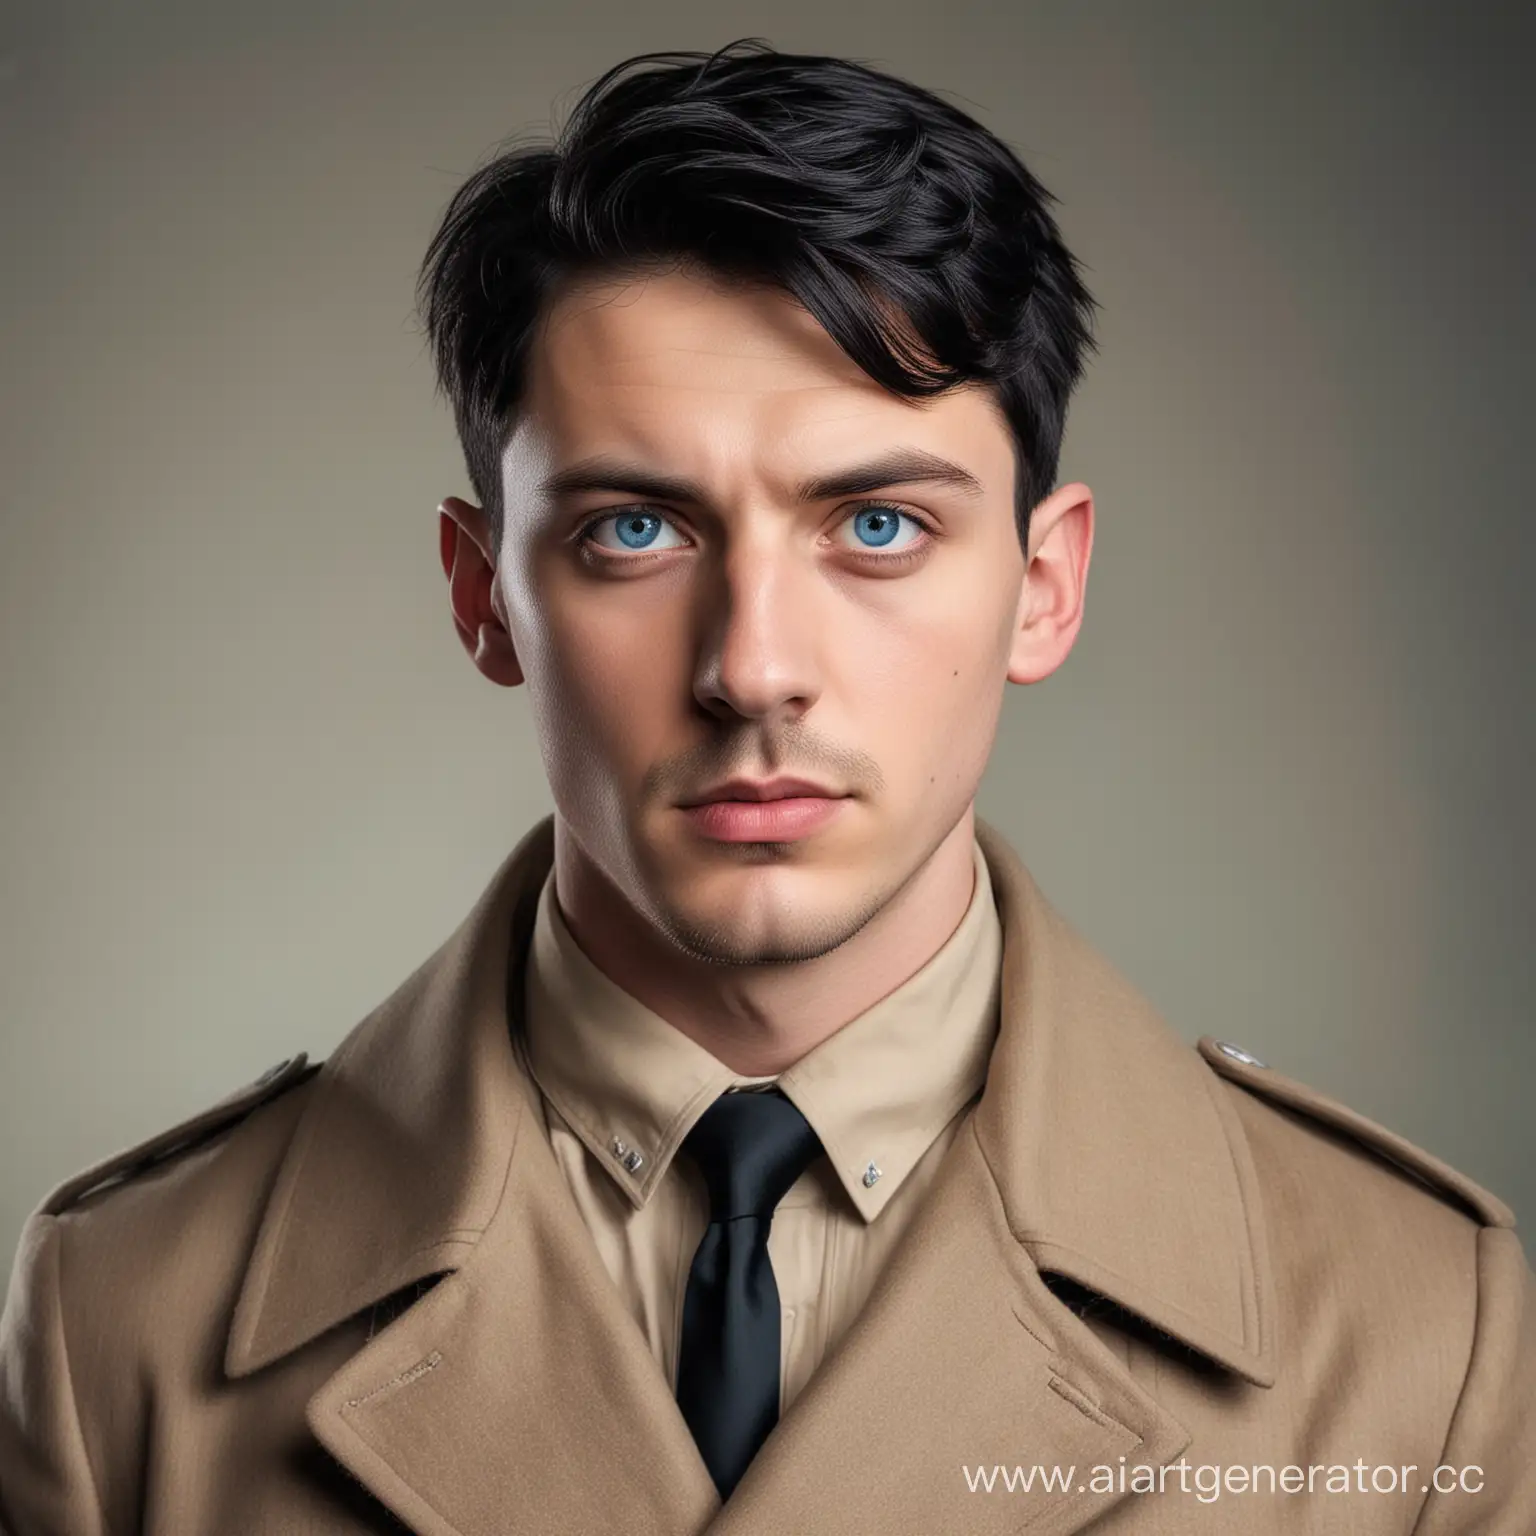 Портрет симпатичного молодого человека с худым скуластым лицом, голубые глаза, усталый взгляд, черные волосы, стрижка как у Гитлера, одет в пальто